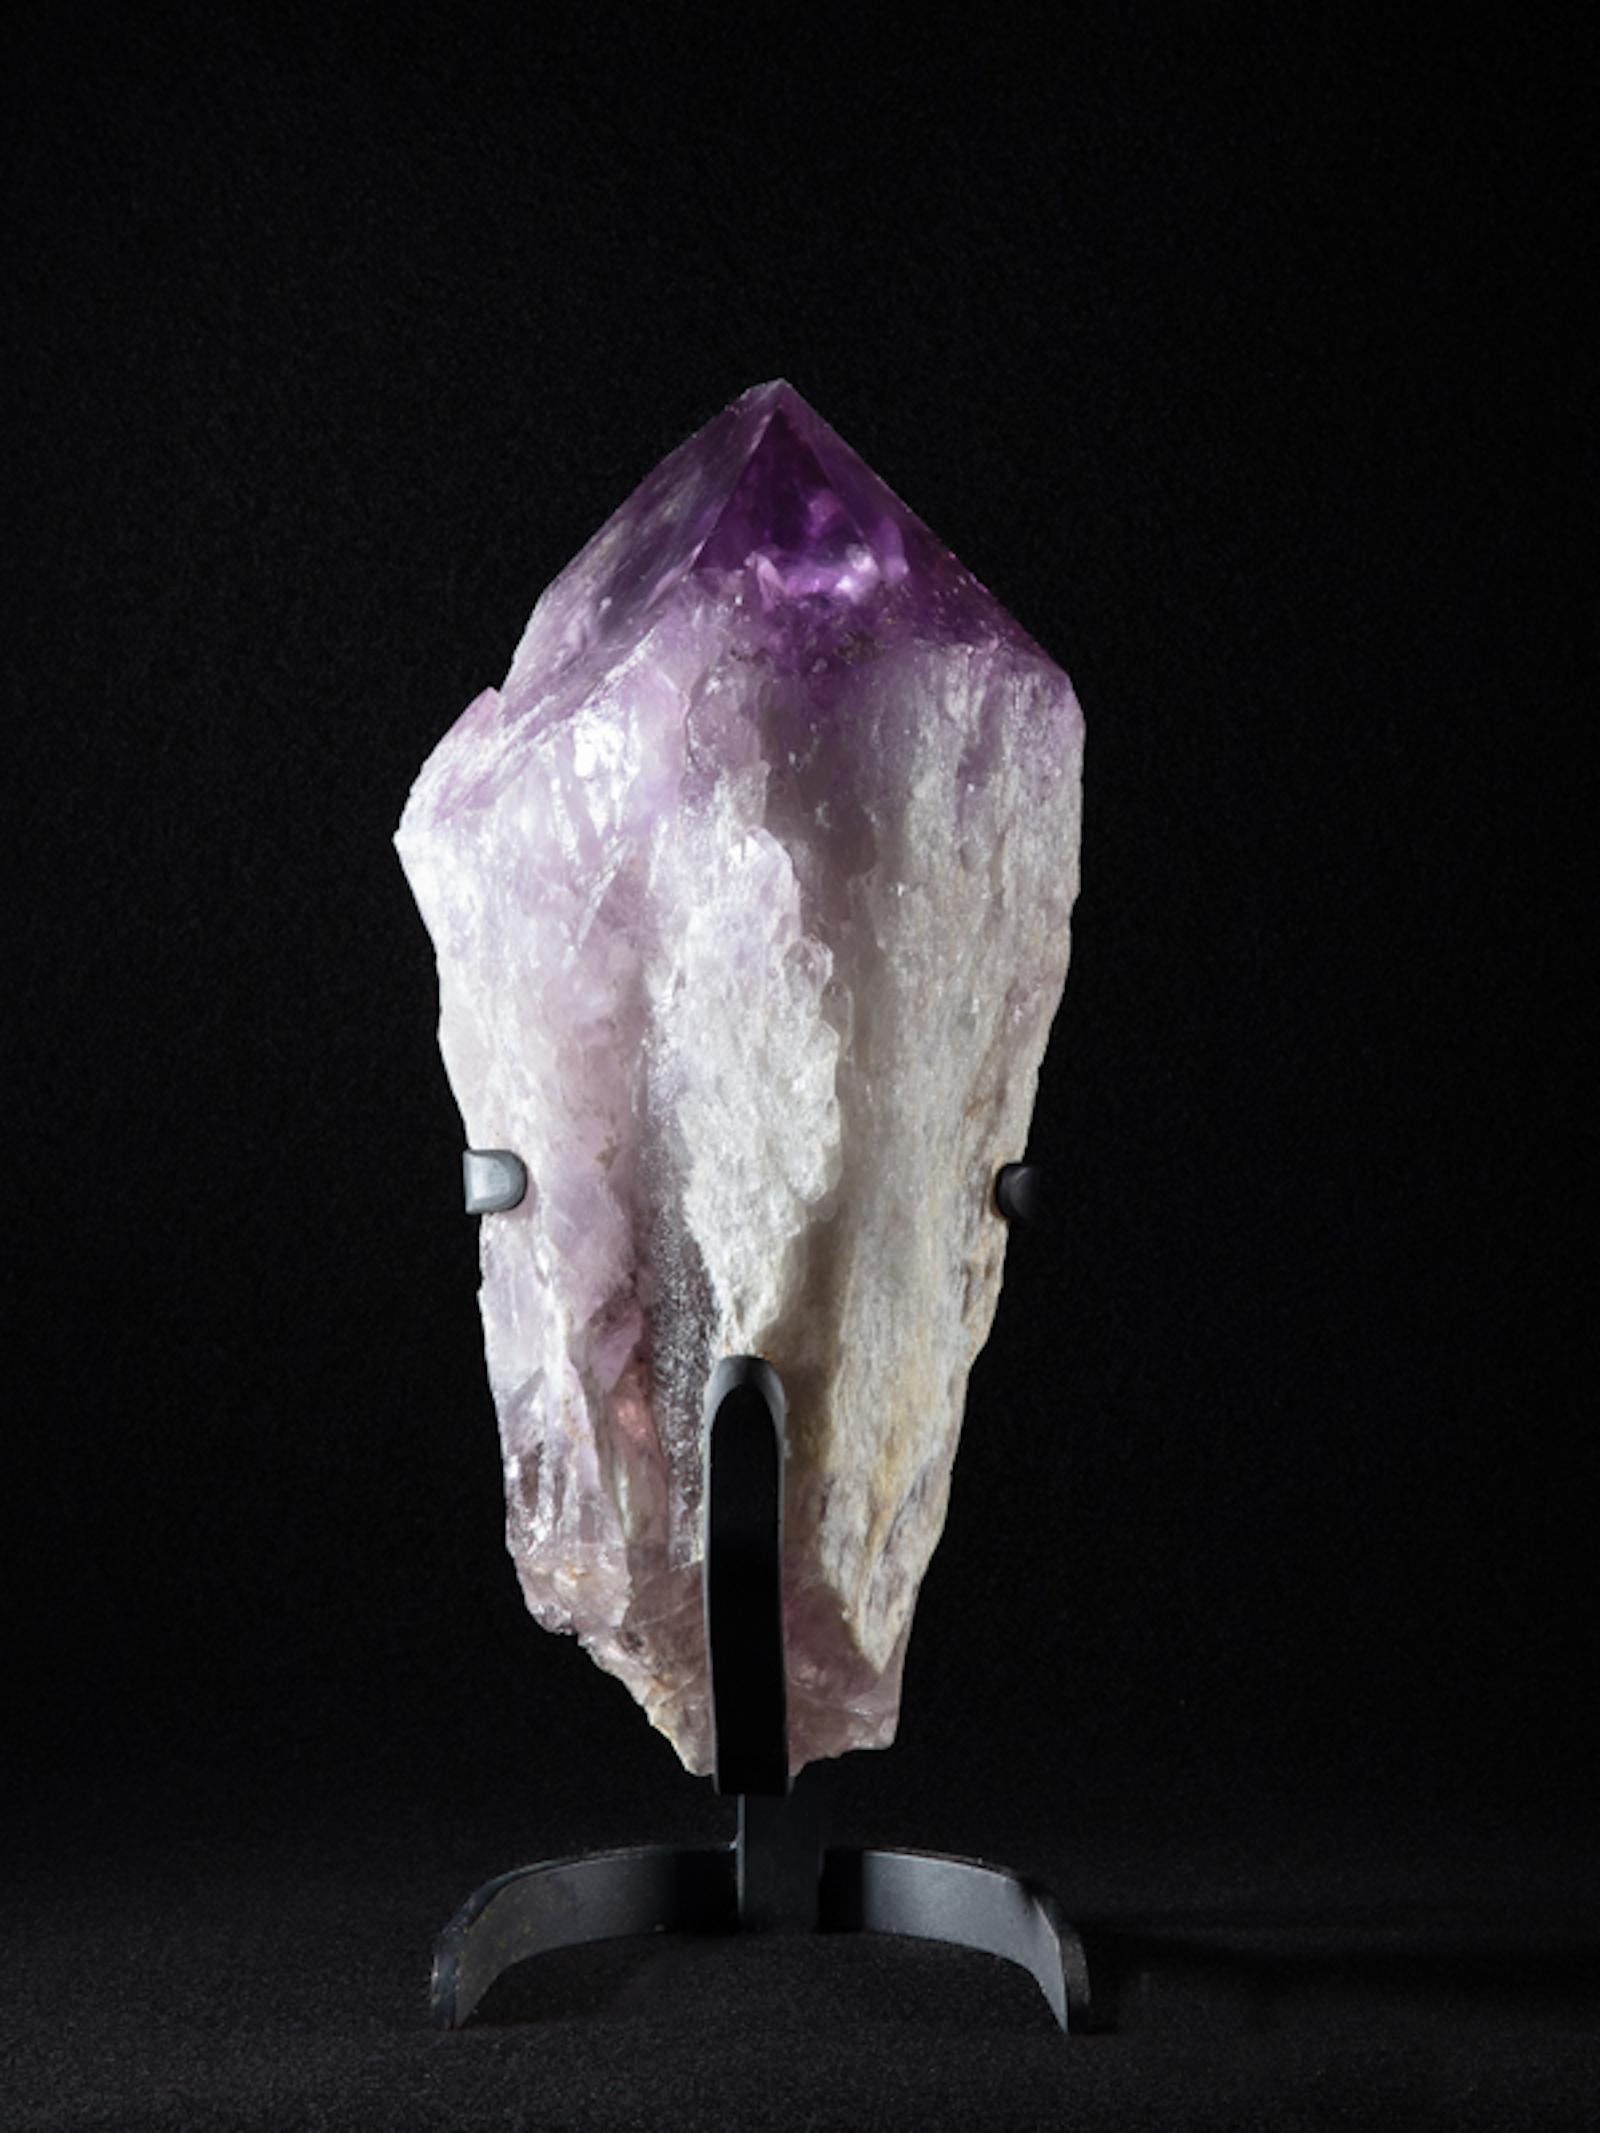 Amethyst ist ein Quarz, der Spuren von Manganoxid enthält, die für die violette Farbe verantwortlich sind. Amethyst ist in der Regel in Hohlräumen von Vulkangestein zu finden und kommt auch in Erzgängen vor. Der Name Amethyst stammt aus dem